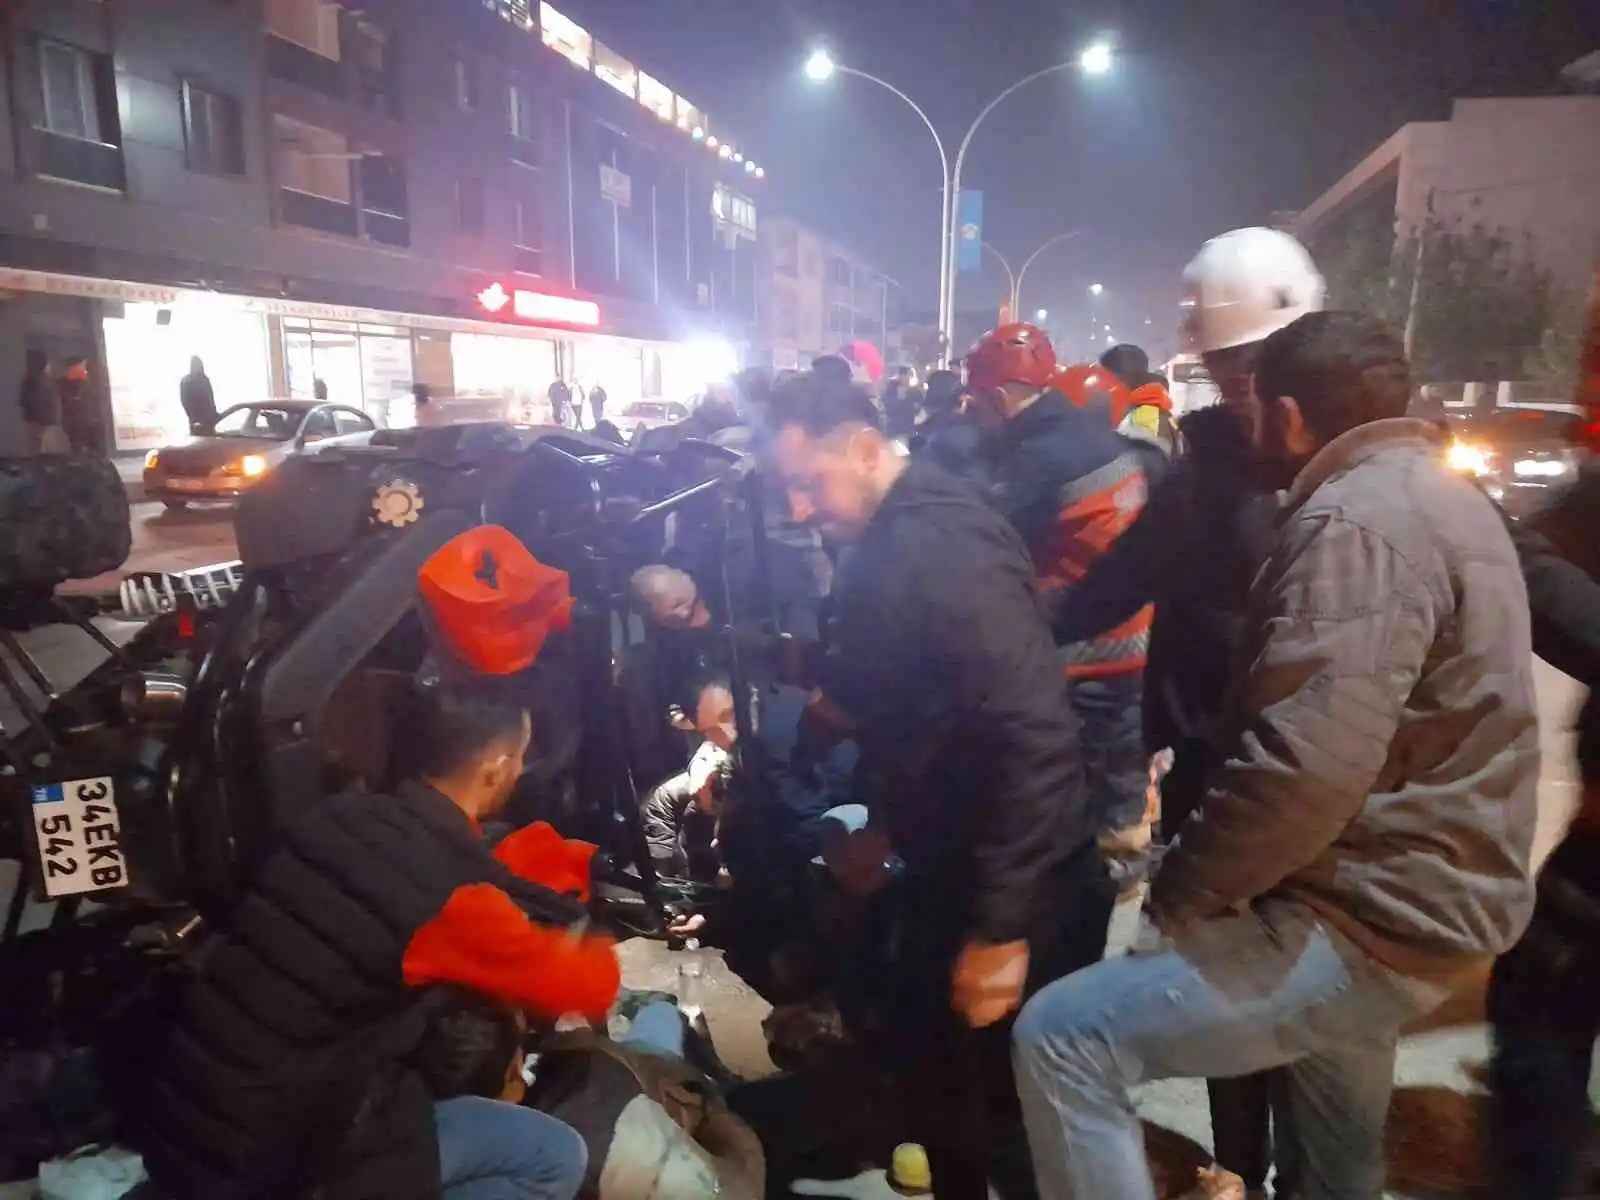 Devrilen UTV’nin altında kalan iki kişi yaralandı
